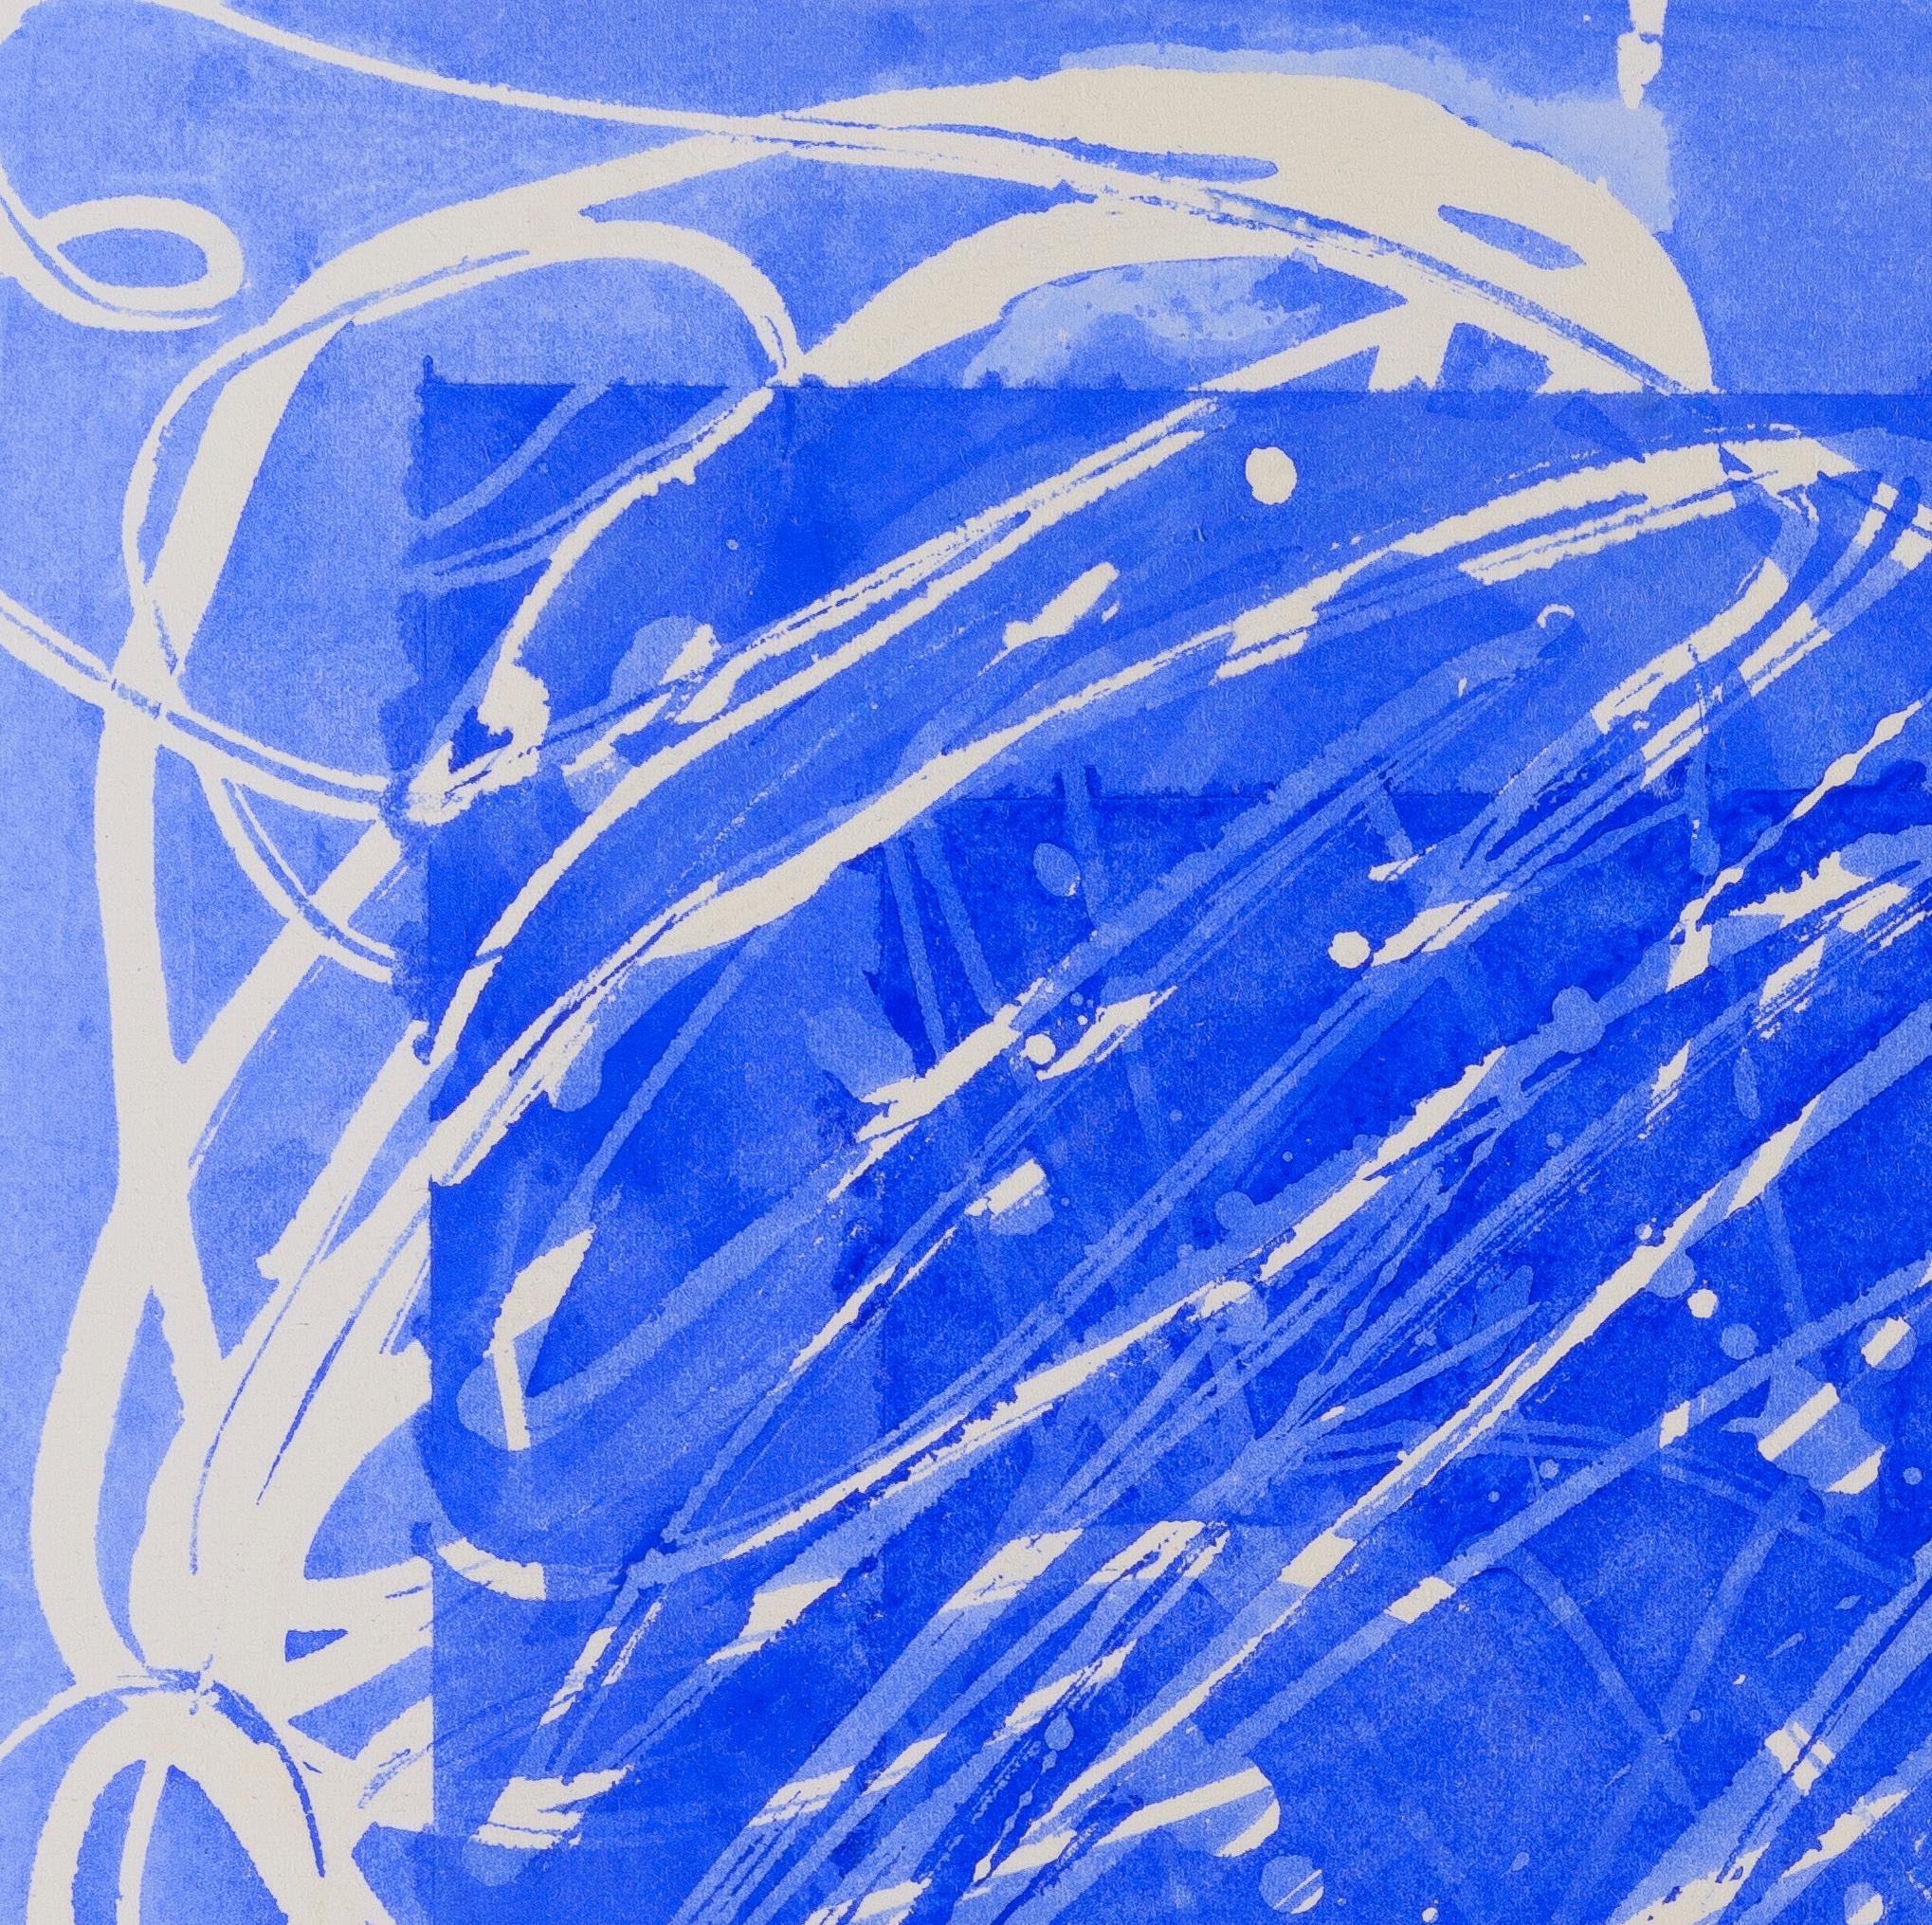 Vergoldet: abstraktes expressionistisches blau-weißes Gemälde/Zeichnung auf Papier, gerahmt – Art von Paula Cahill